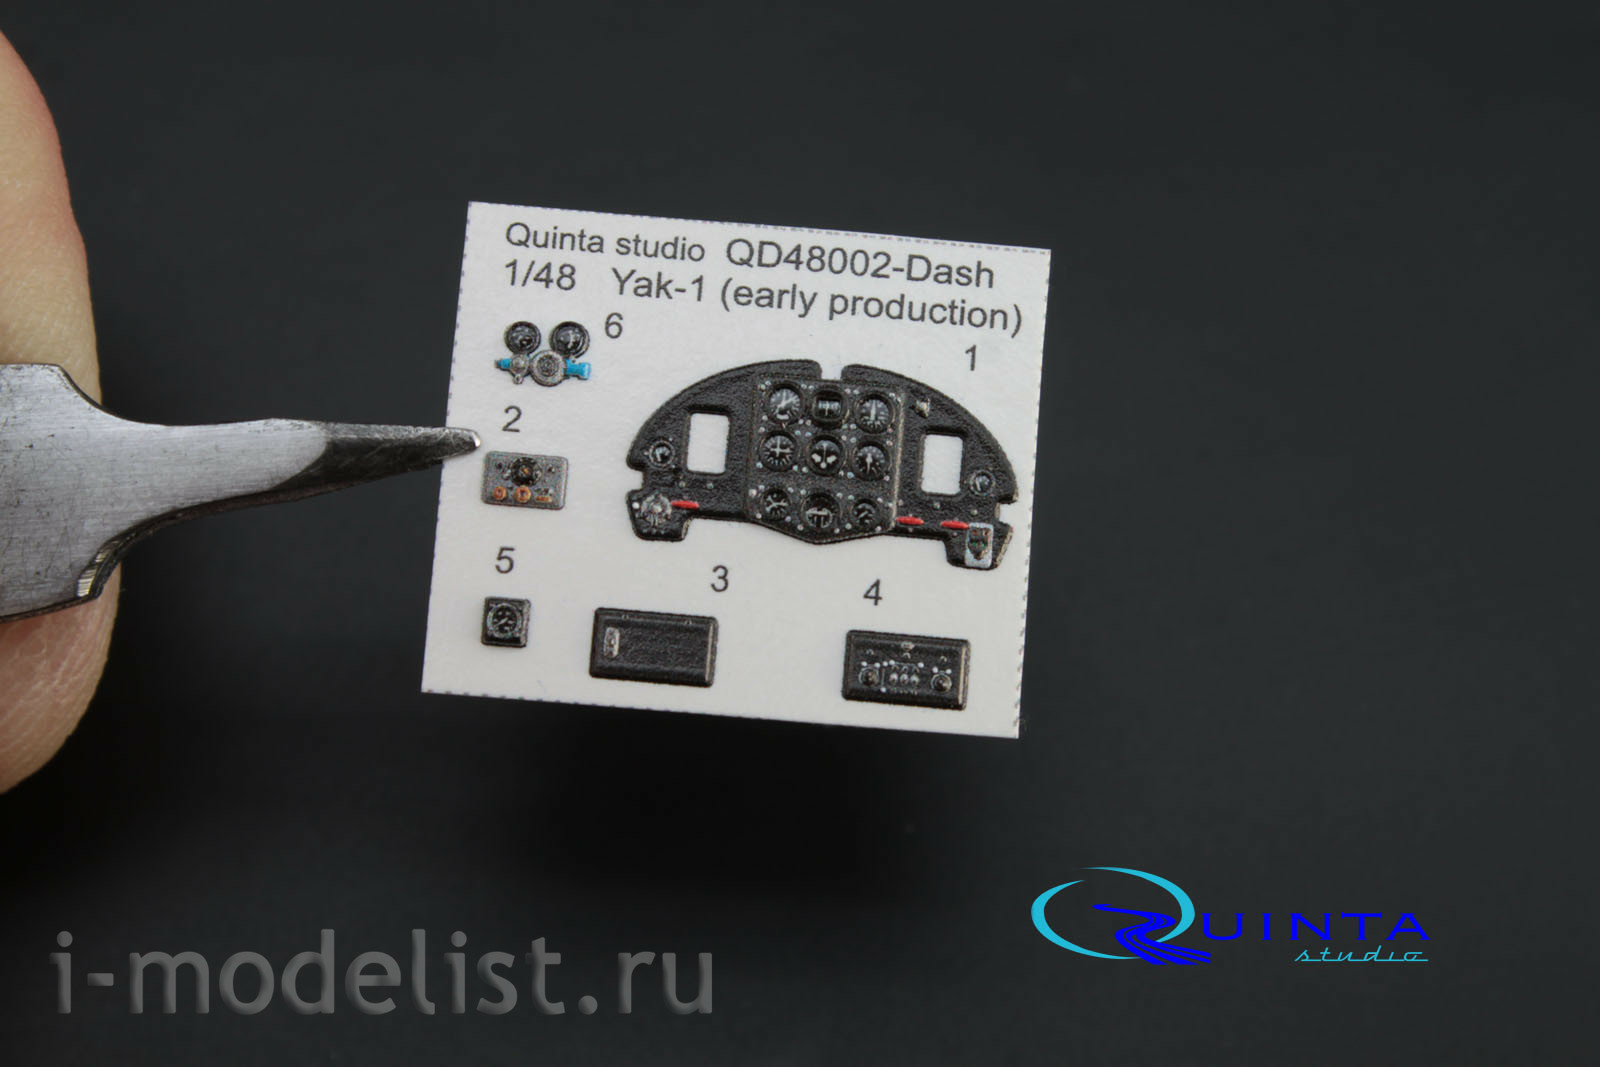 QD48002-Dash Quinta Studio 1/48 3D Декаль интерьера кабины Як-1 (ранние серии) (для модели Моделсвит/ЮФ)